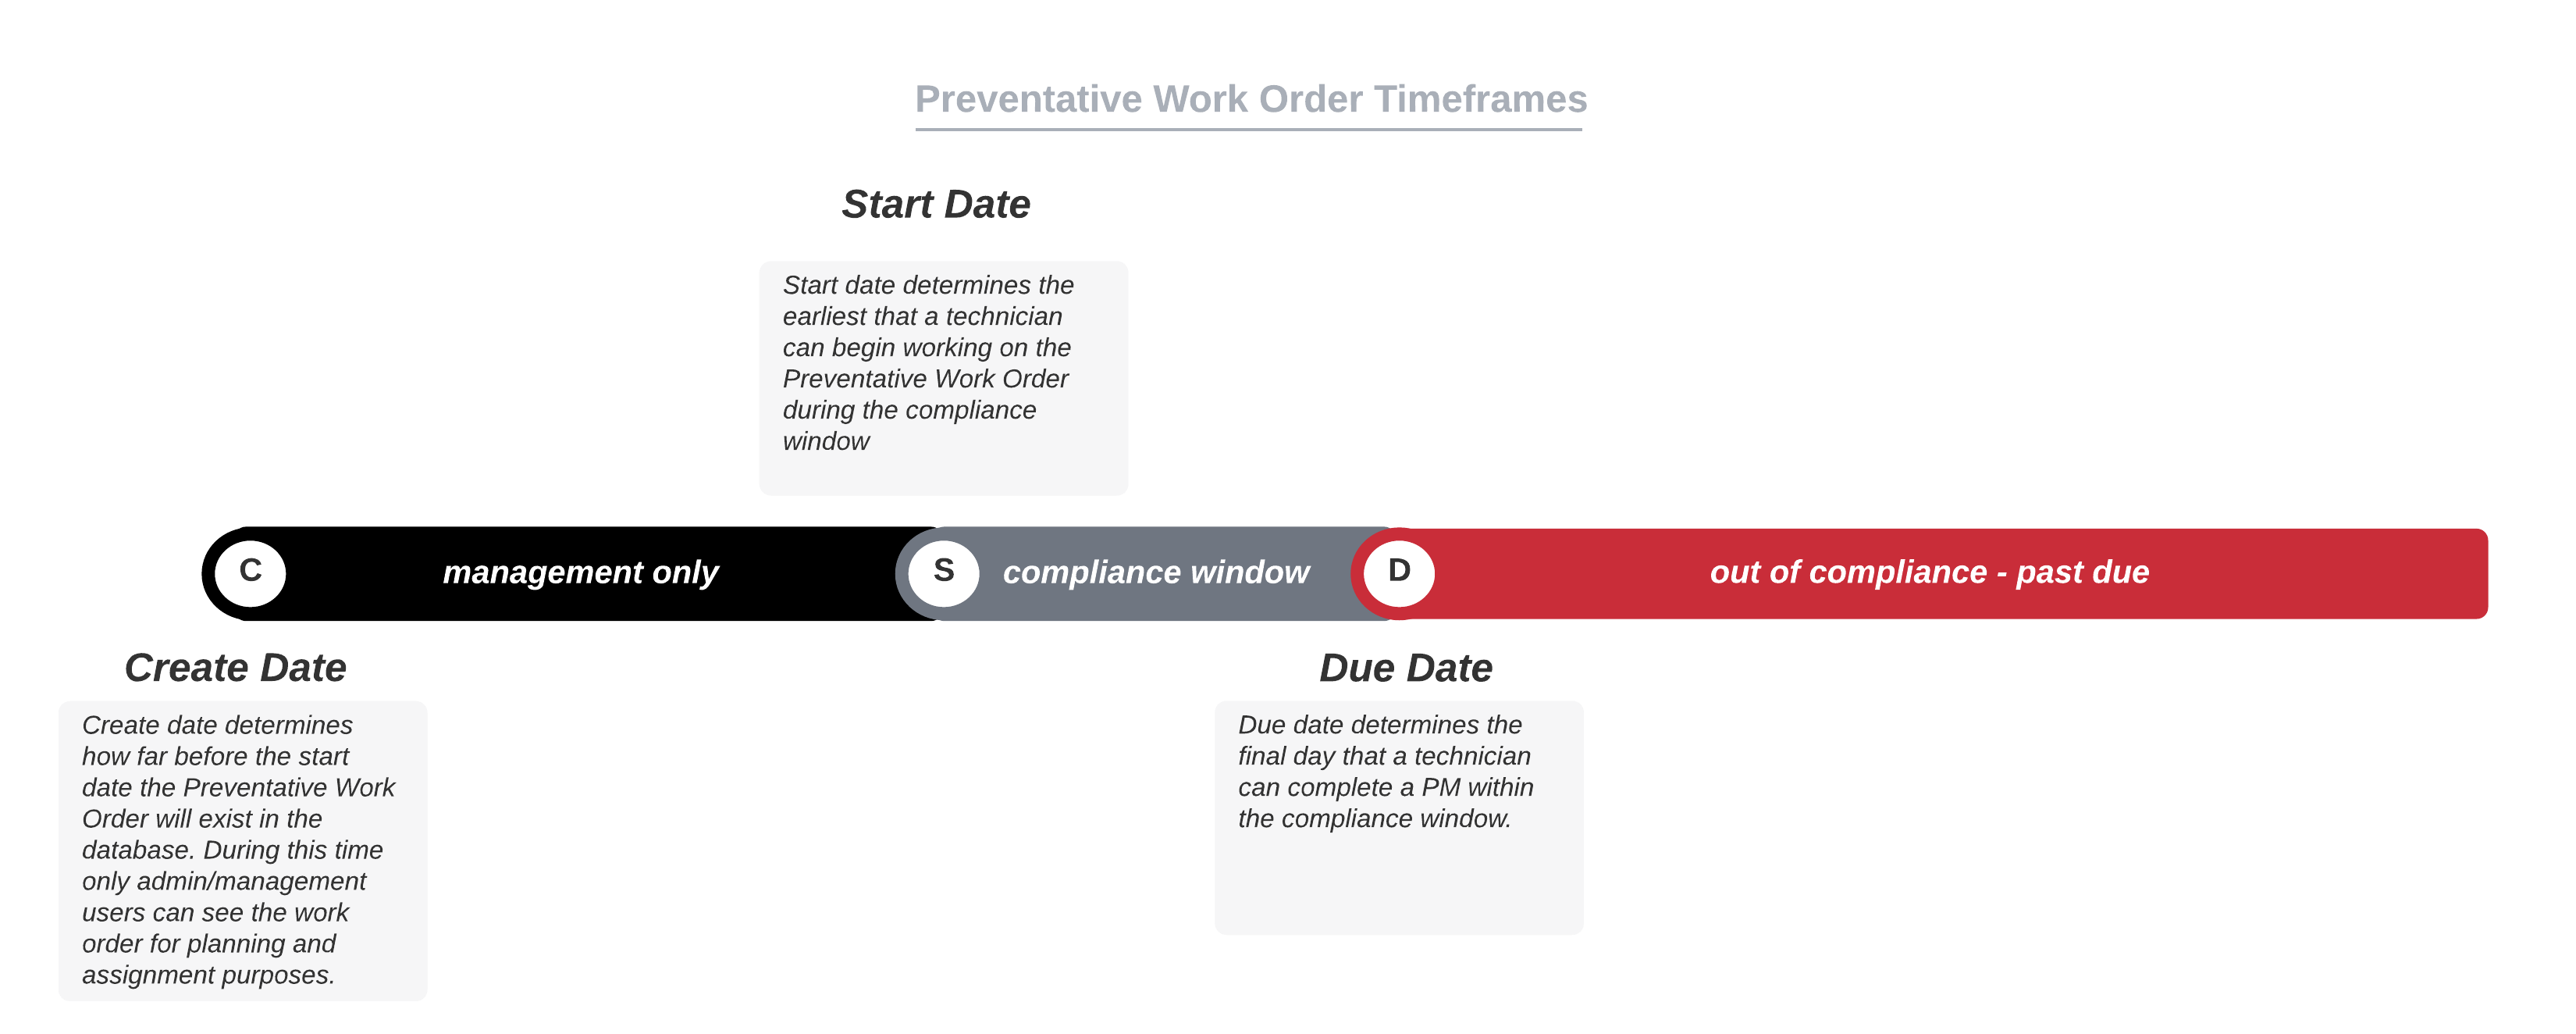 image of preventative work order timeframes